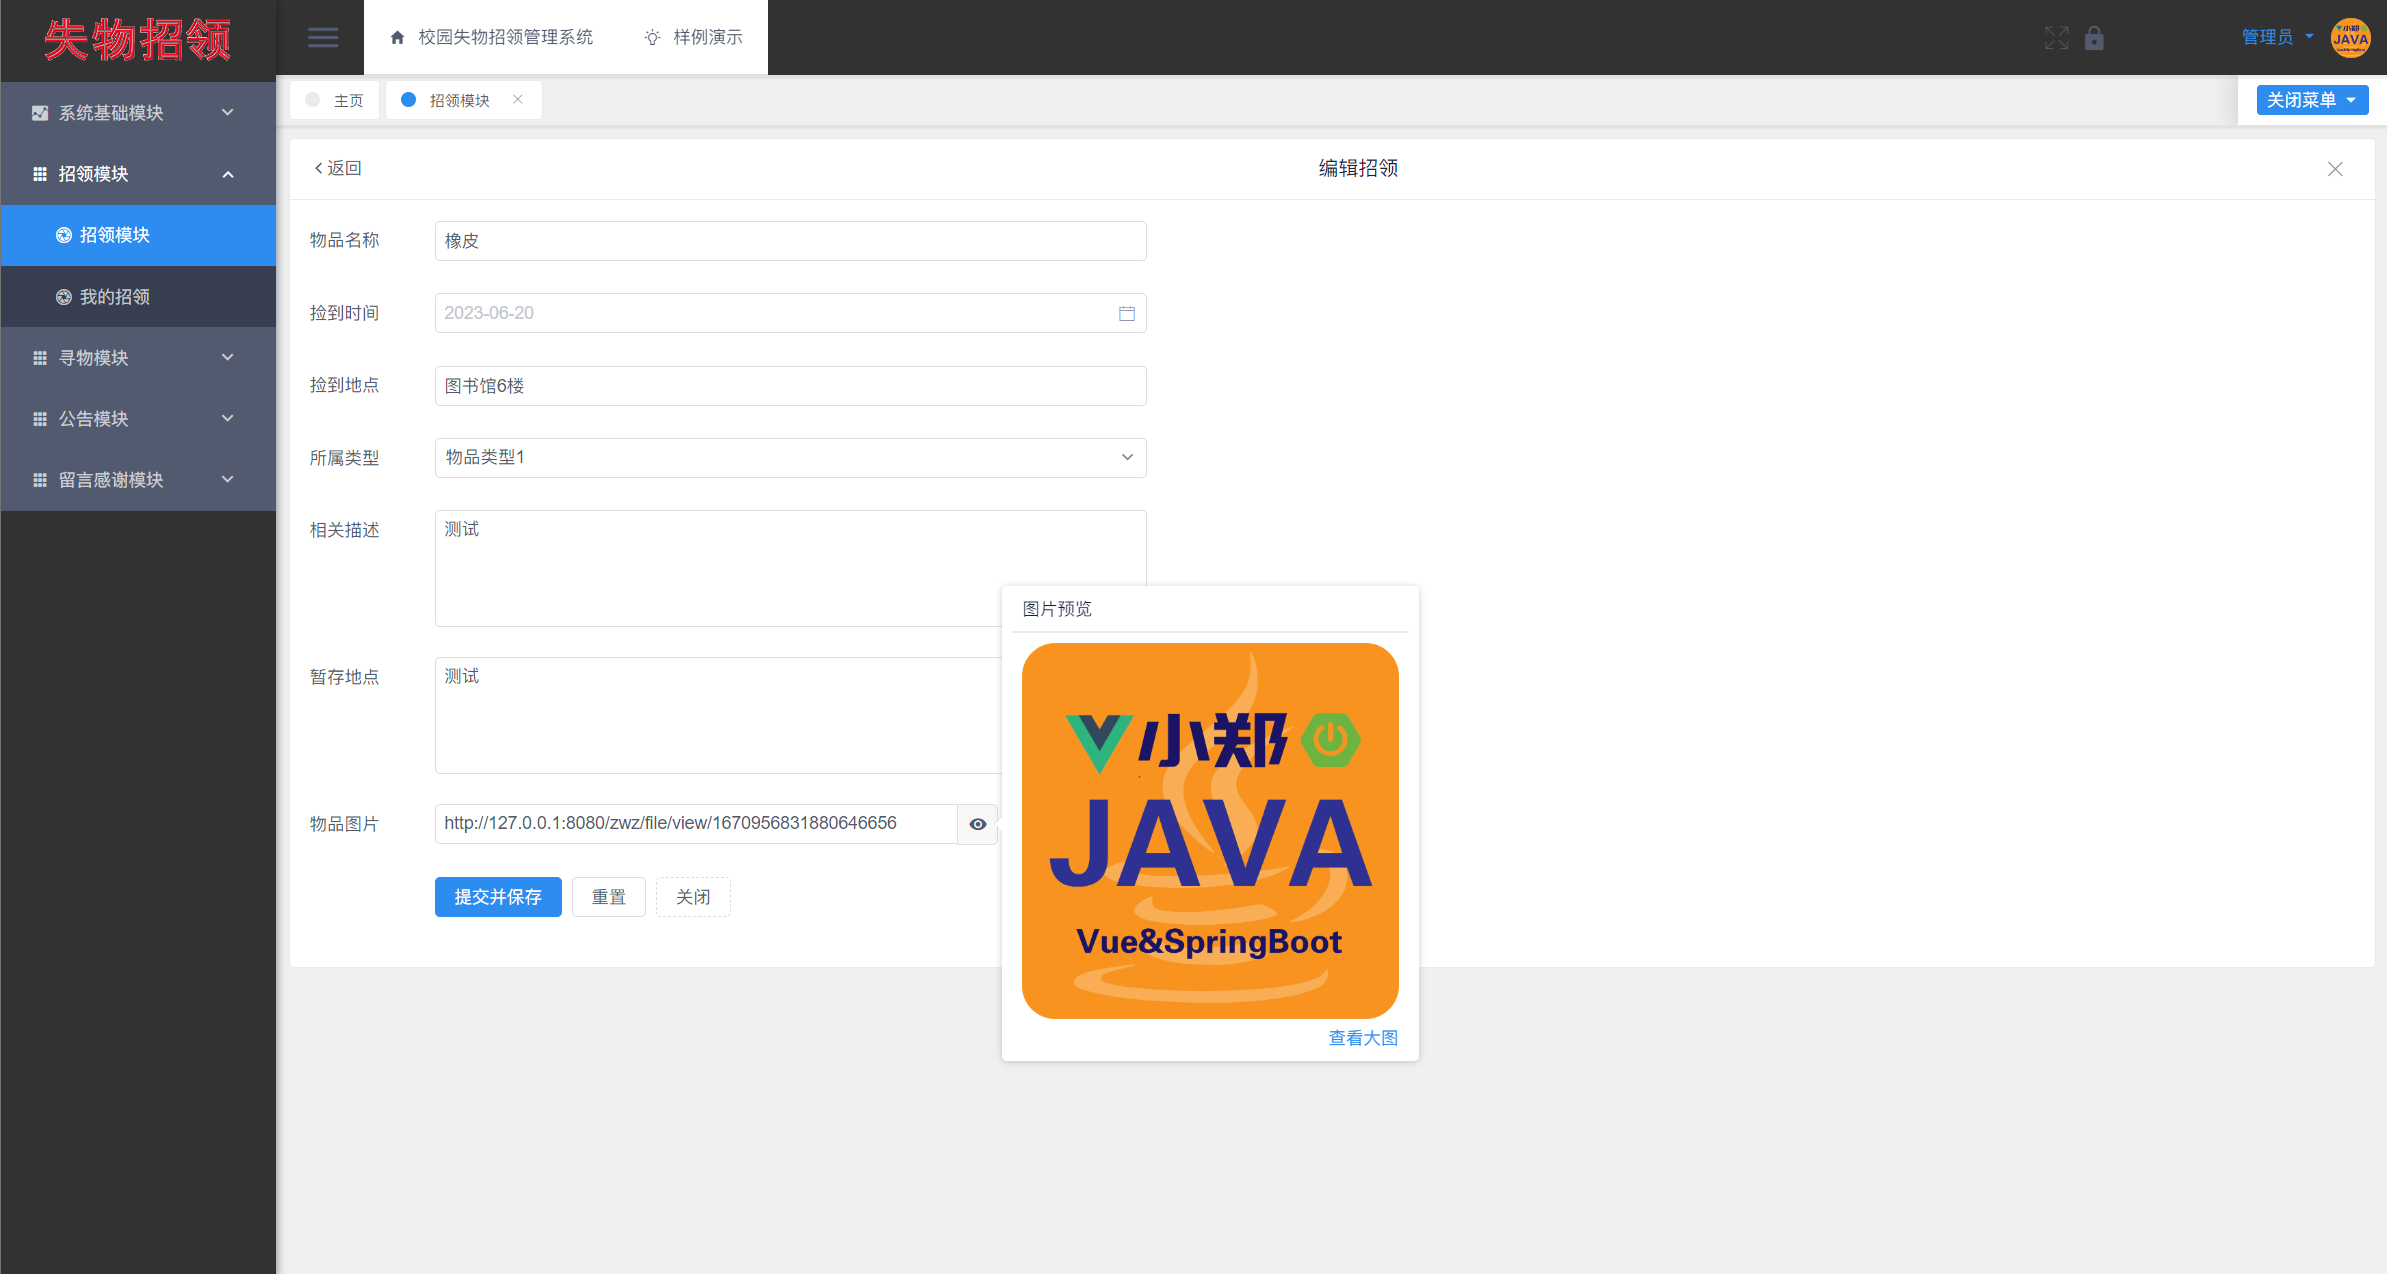 【开源】基于Vue.js的校园失物招领管理系统的设计和实现_java_06